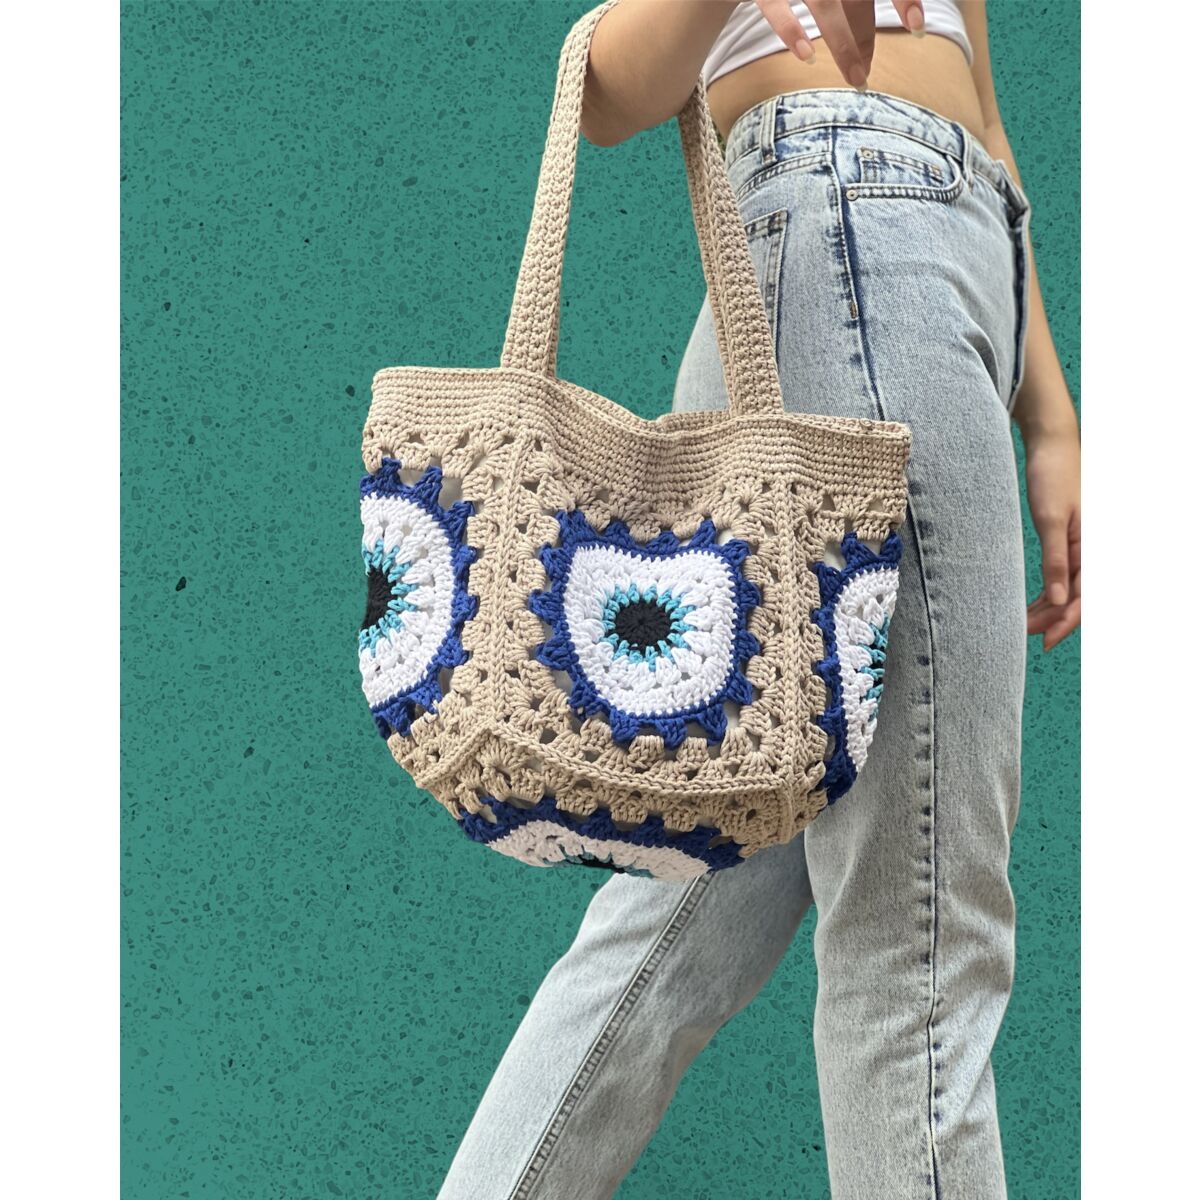  Crochet Bag for Women Evil Eye Handmade Tote Bag with